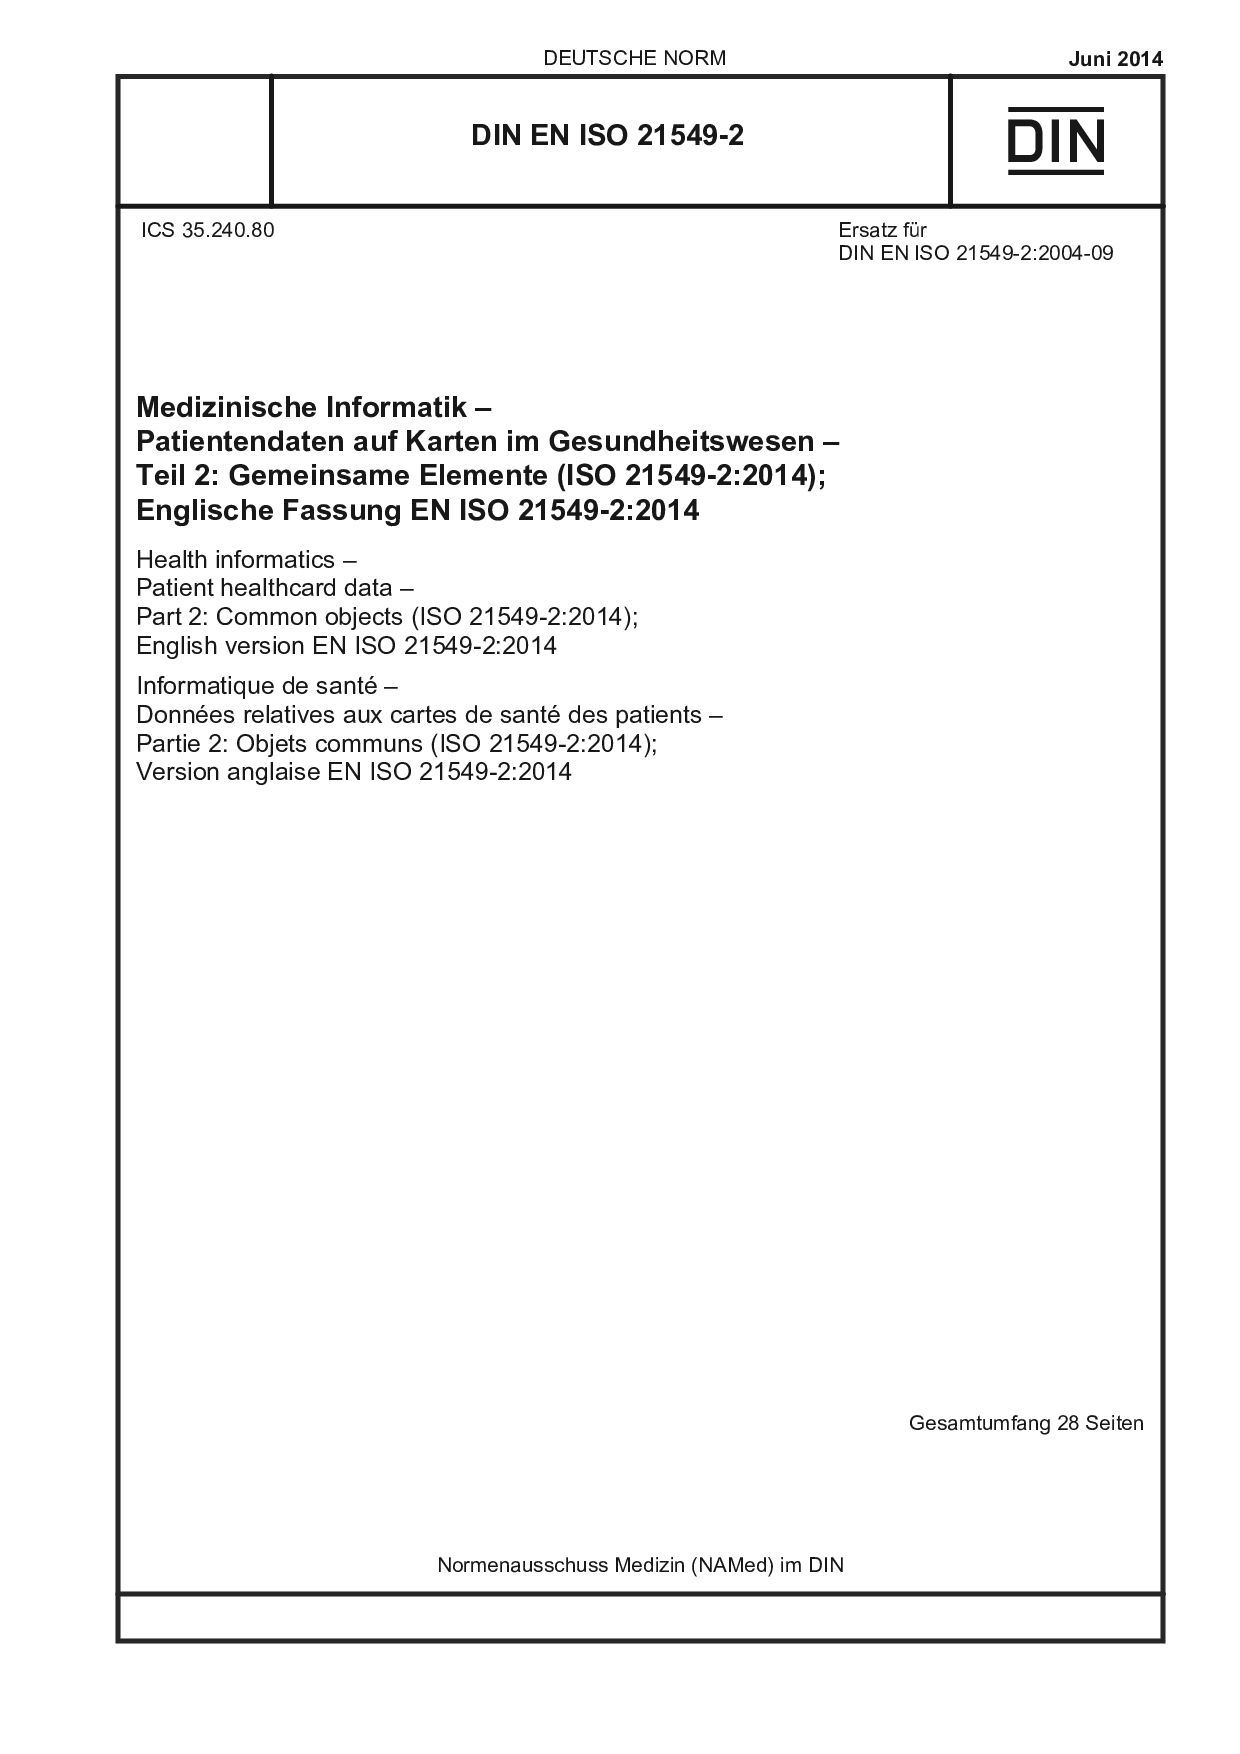 DIN EN ISO 21549-2:2014